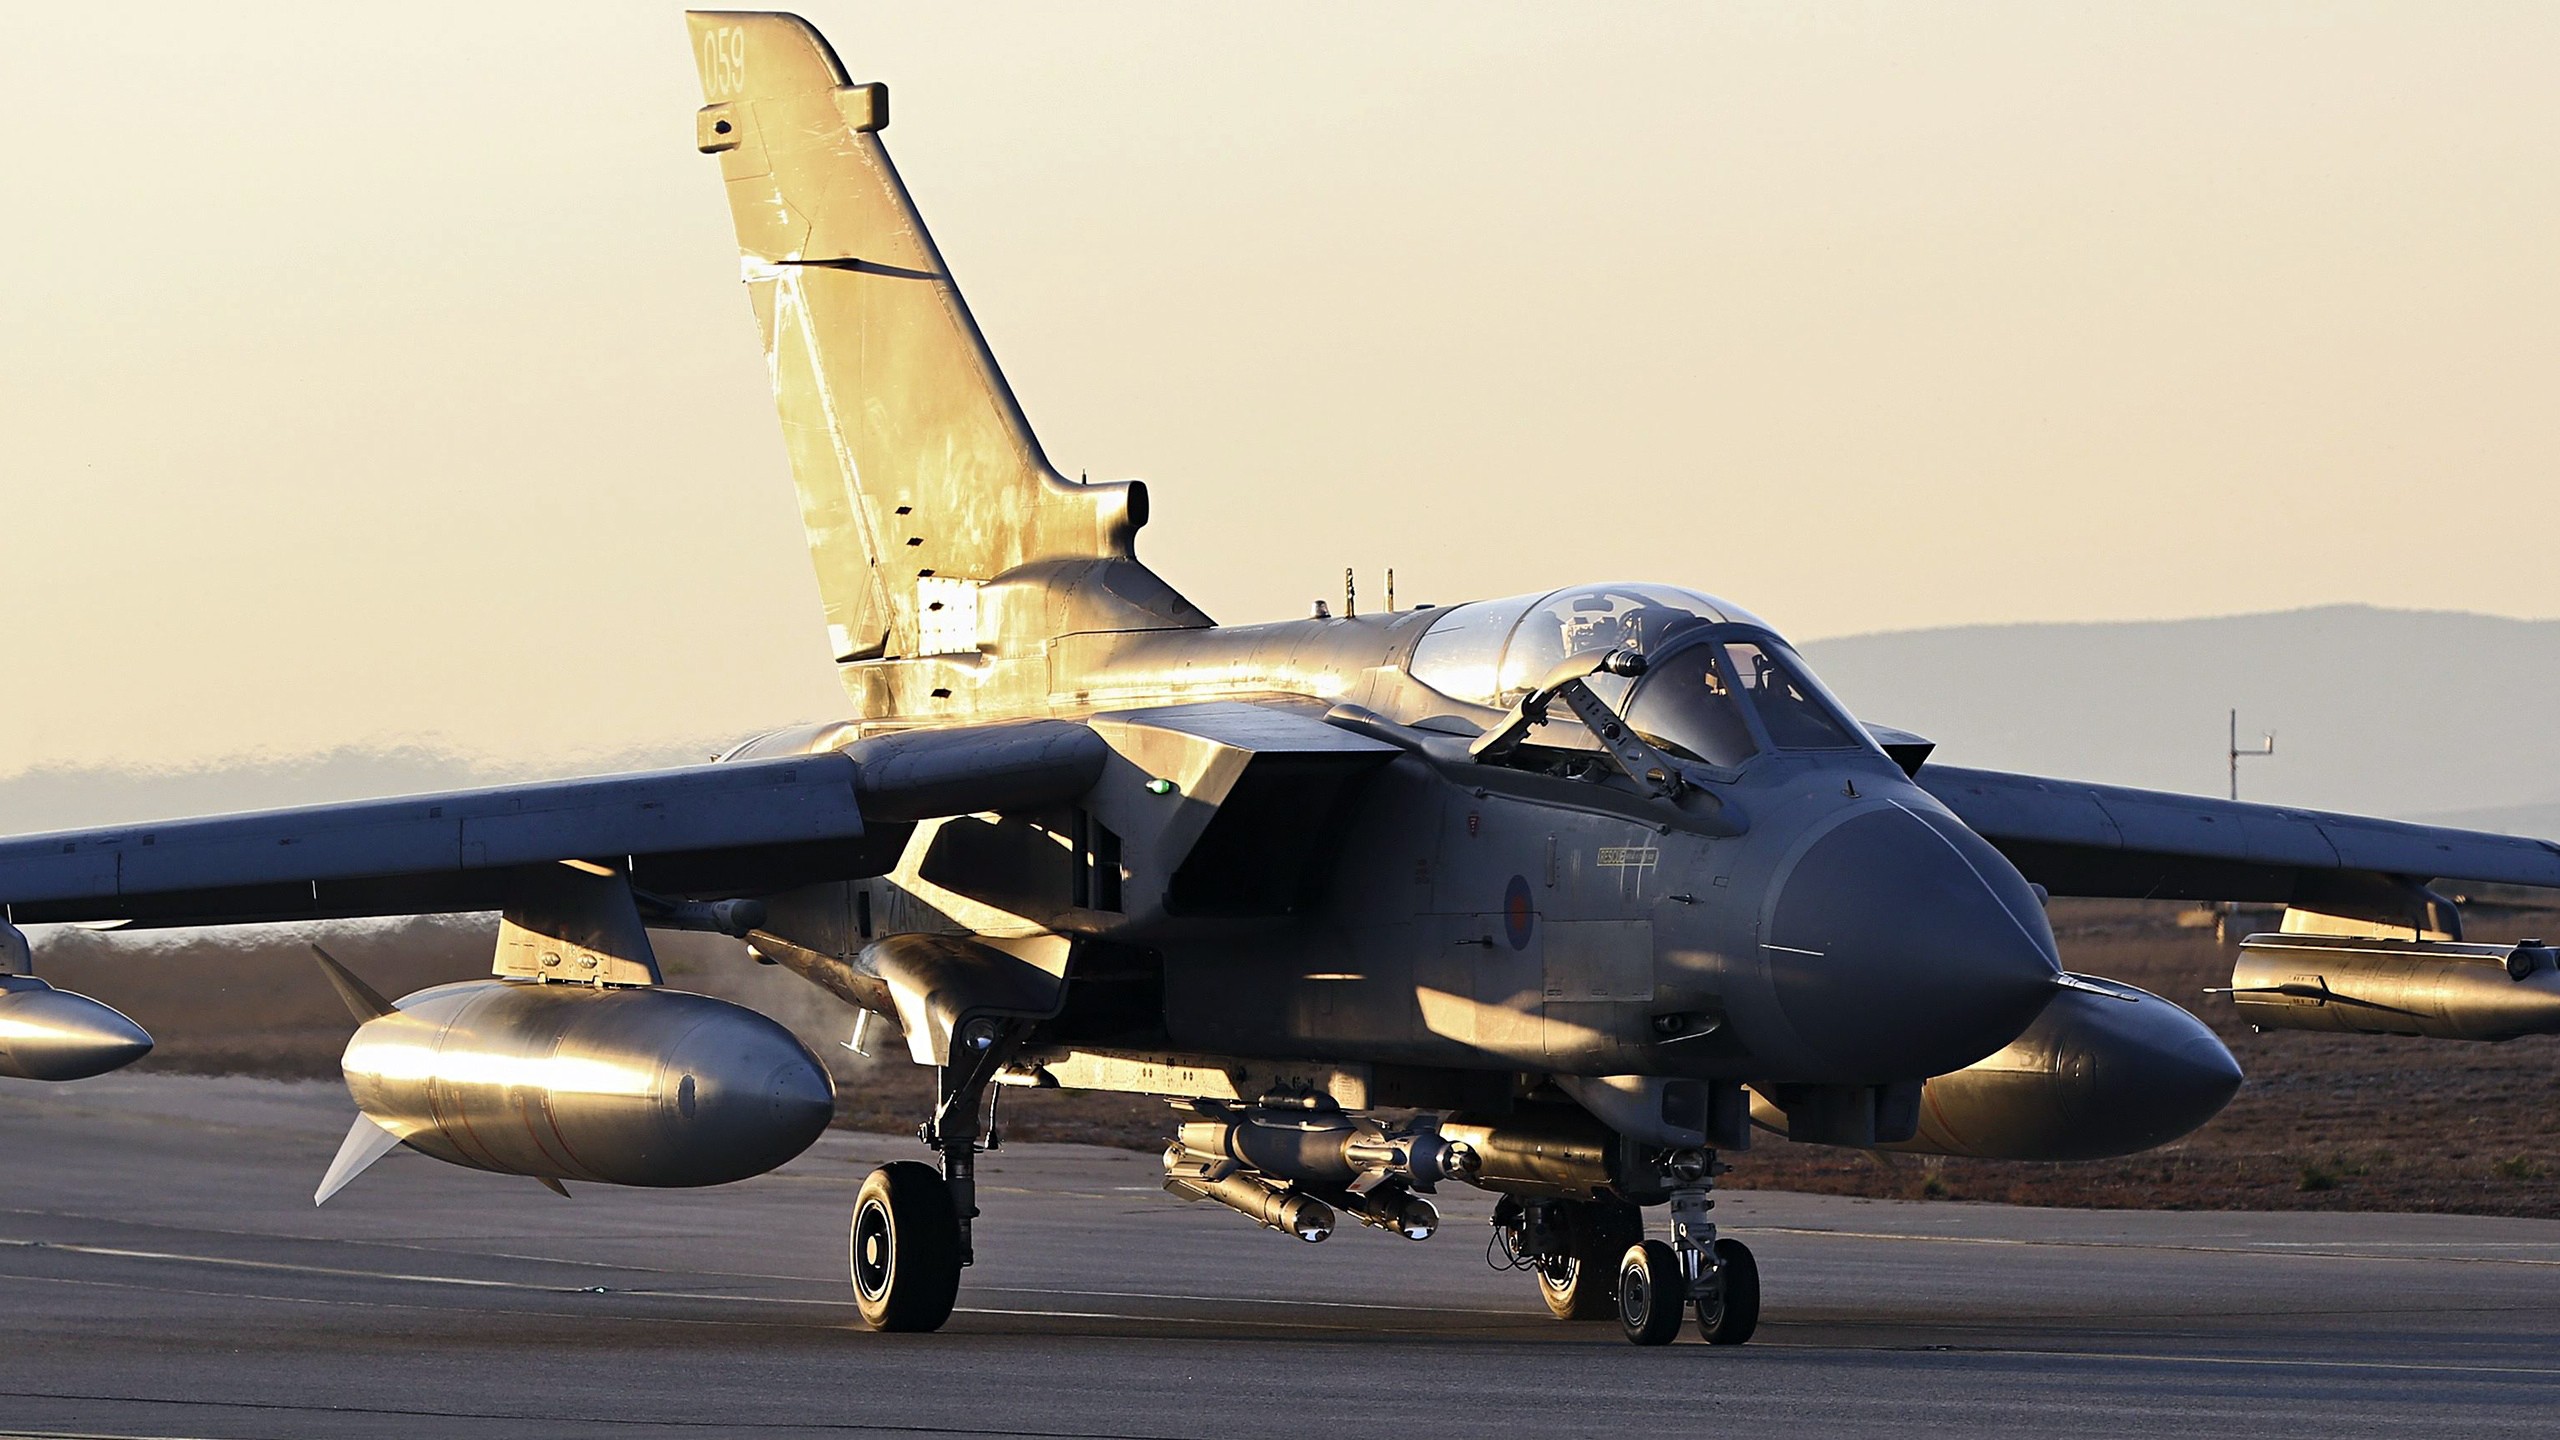 Panavia Tornado Military Aircraft Aircraft Jet Fighter Royal Airforce Runway Brimstone 2560x1440